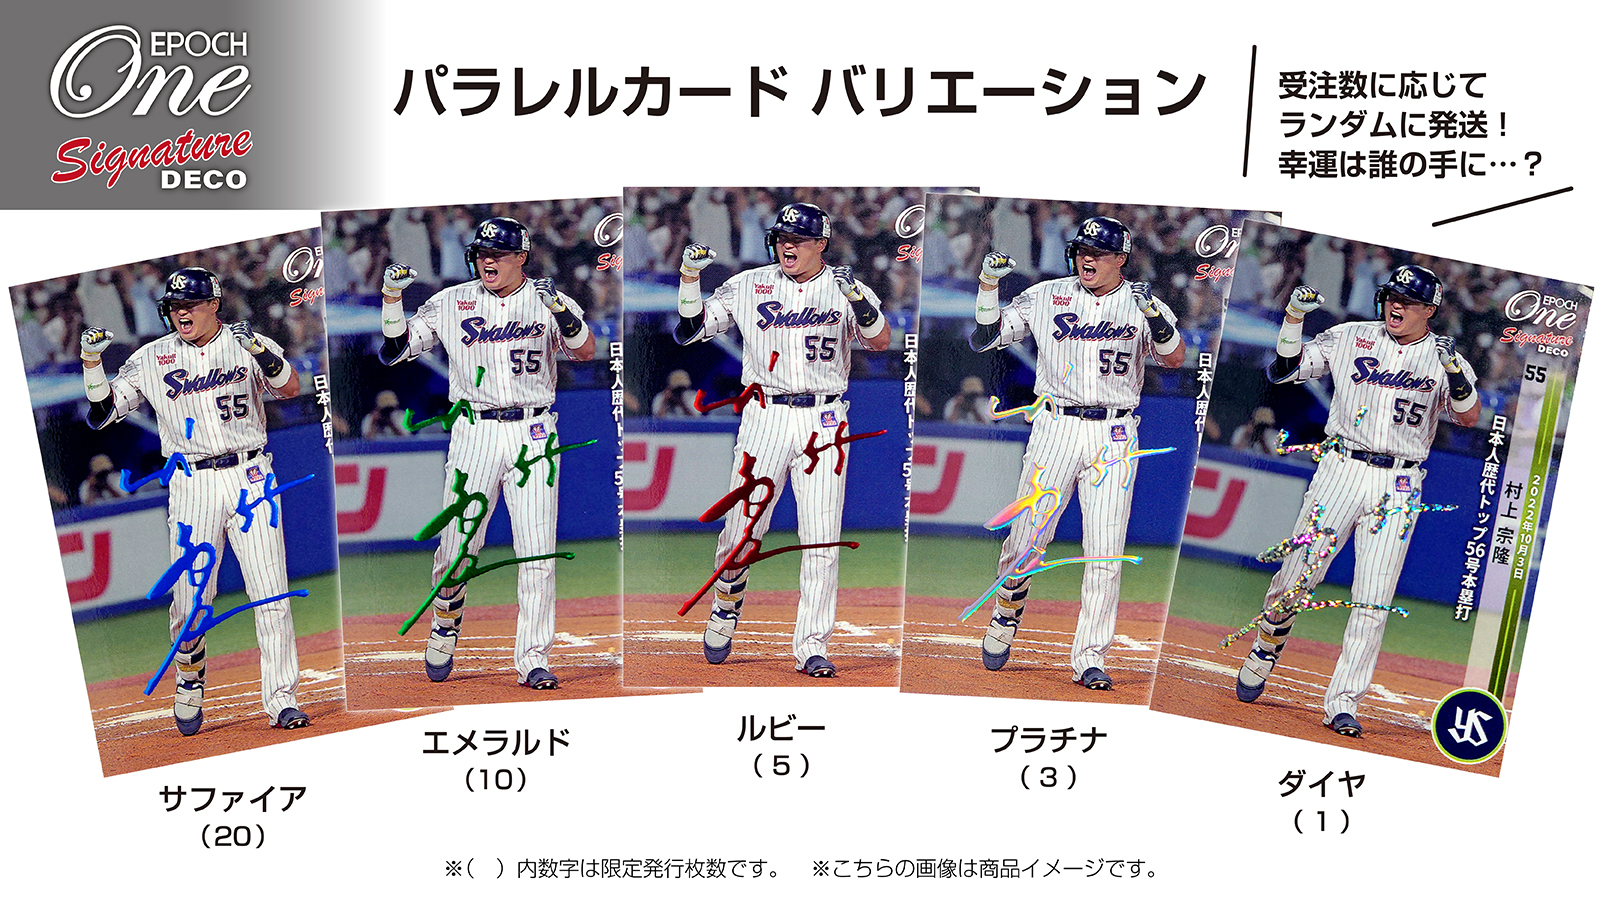 ※Signature DECO 【和田康士朗】プロ初本塁打（23.7.29）